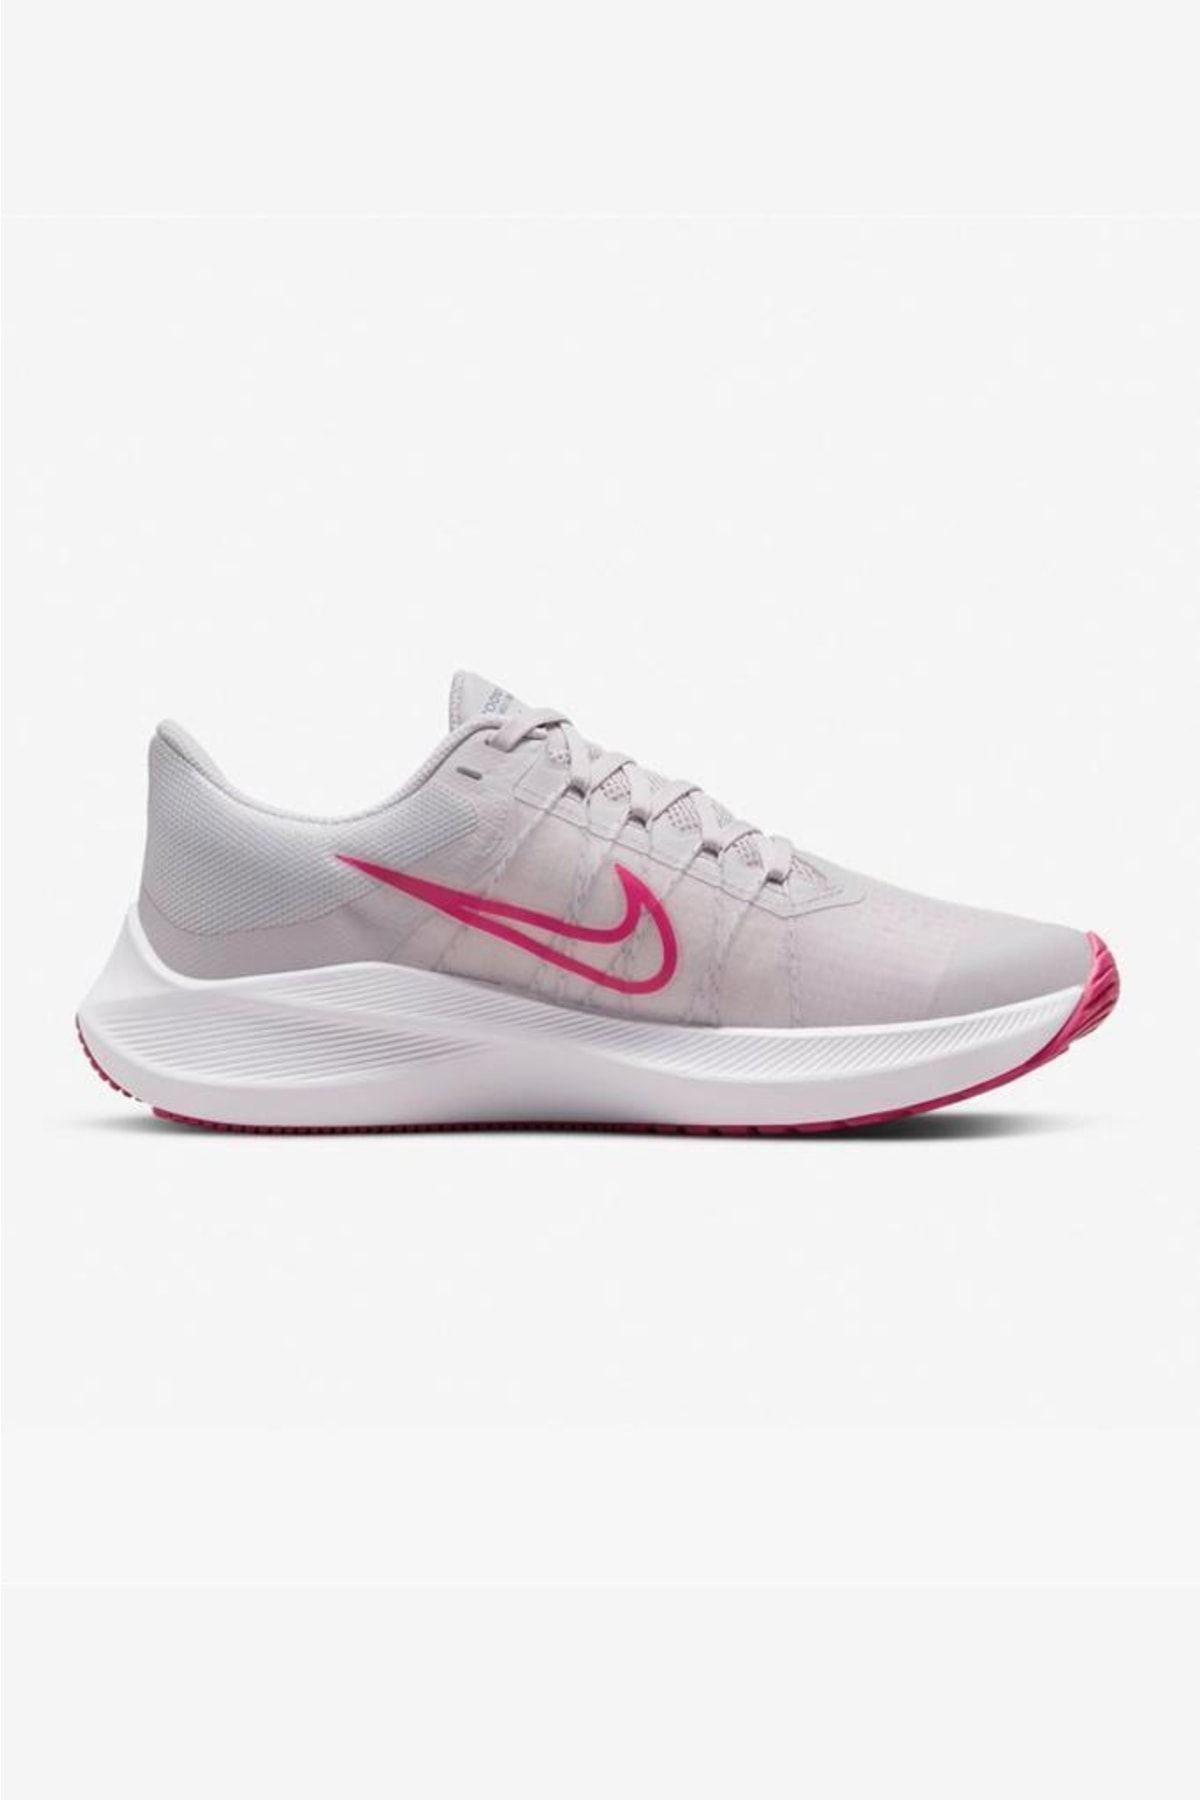 Nike Zoom Winflo 8 Cw3421-503 Pembe Kadın Koşu Ayakkabısı